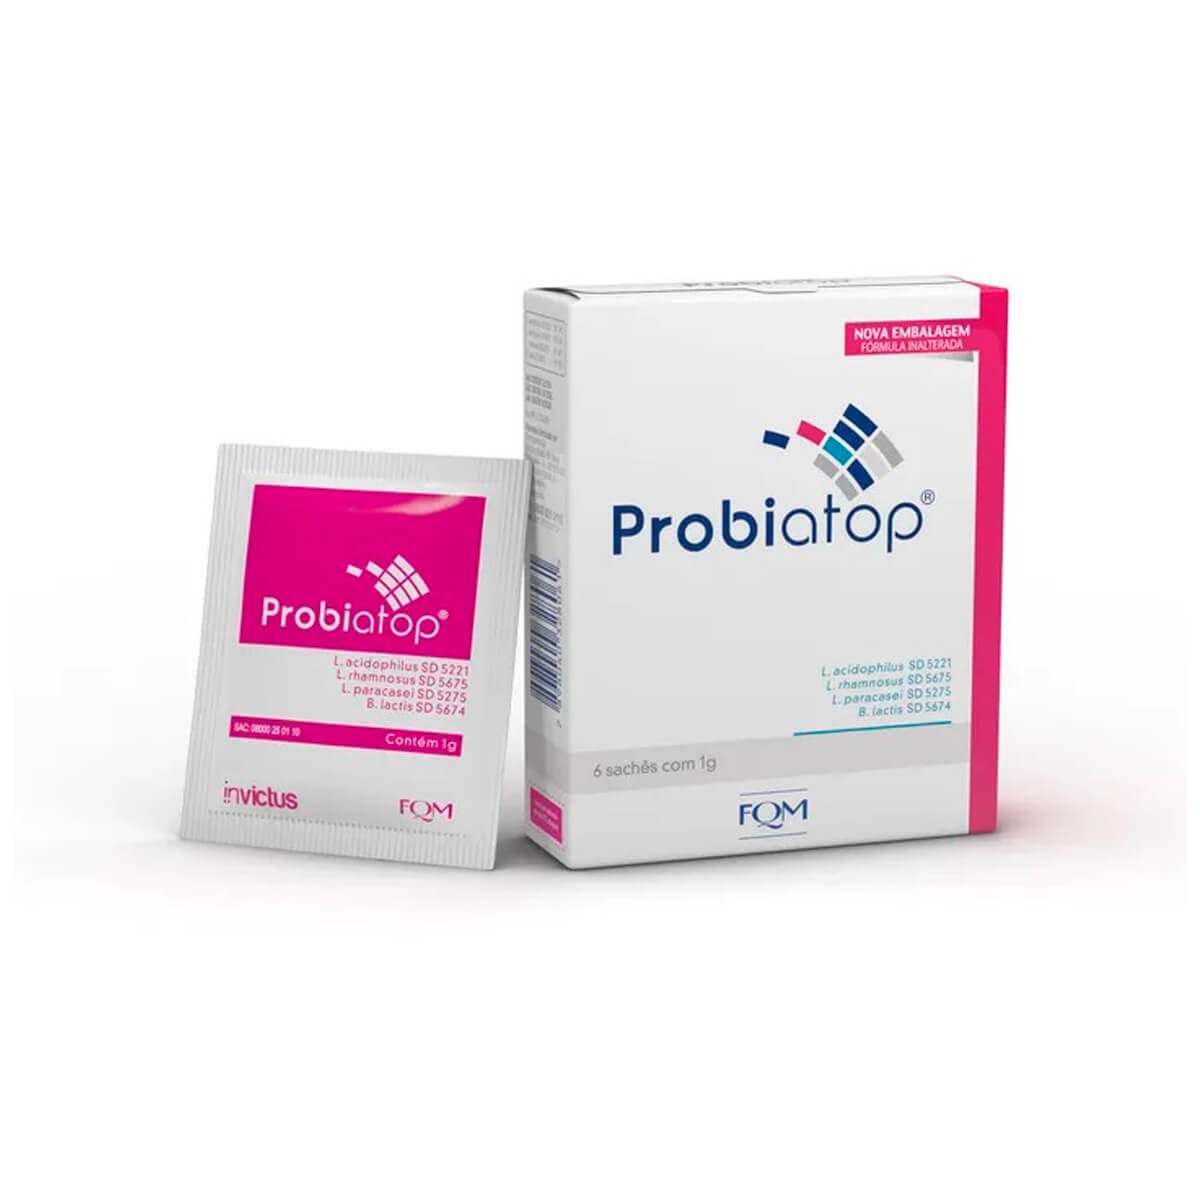 Suplemento Probiótico Probiatop com 6 sachês de 1g cada